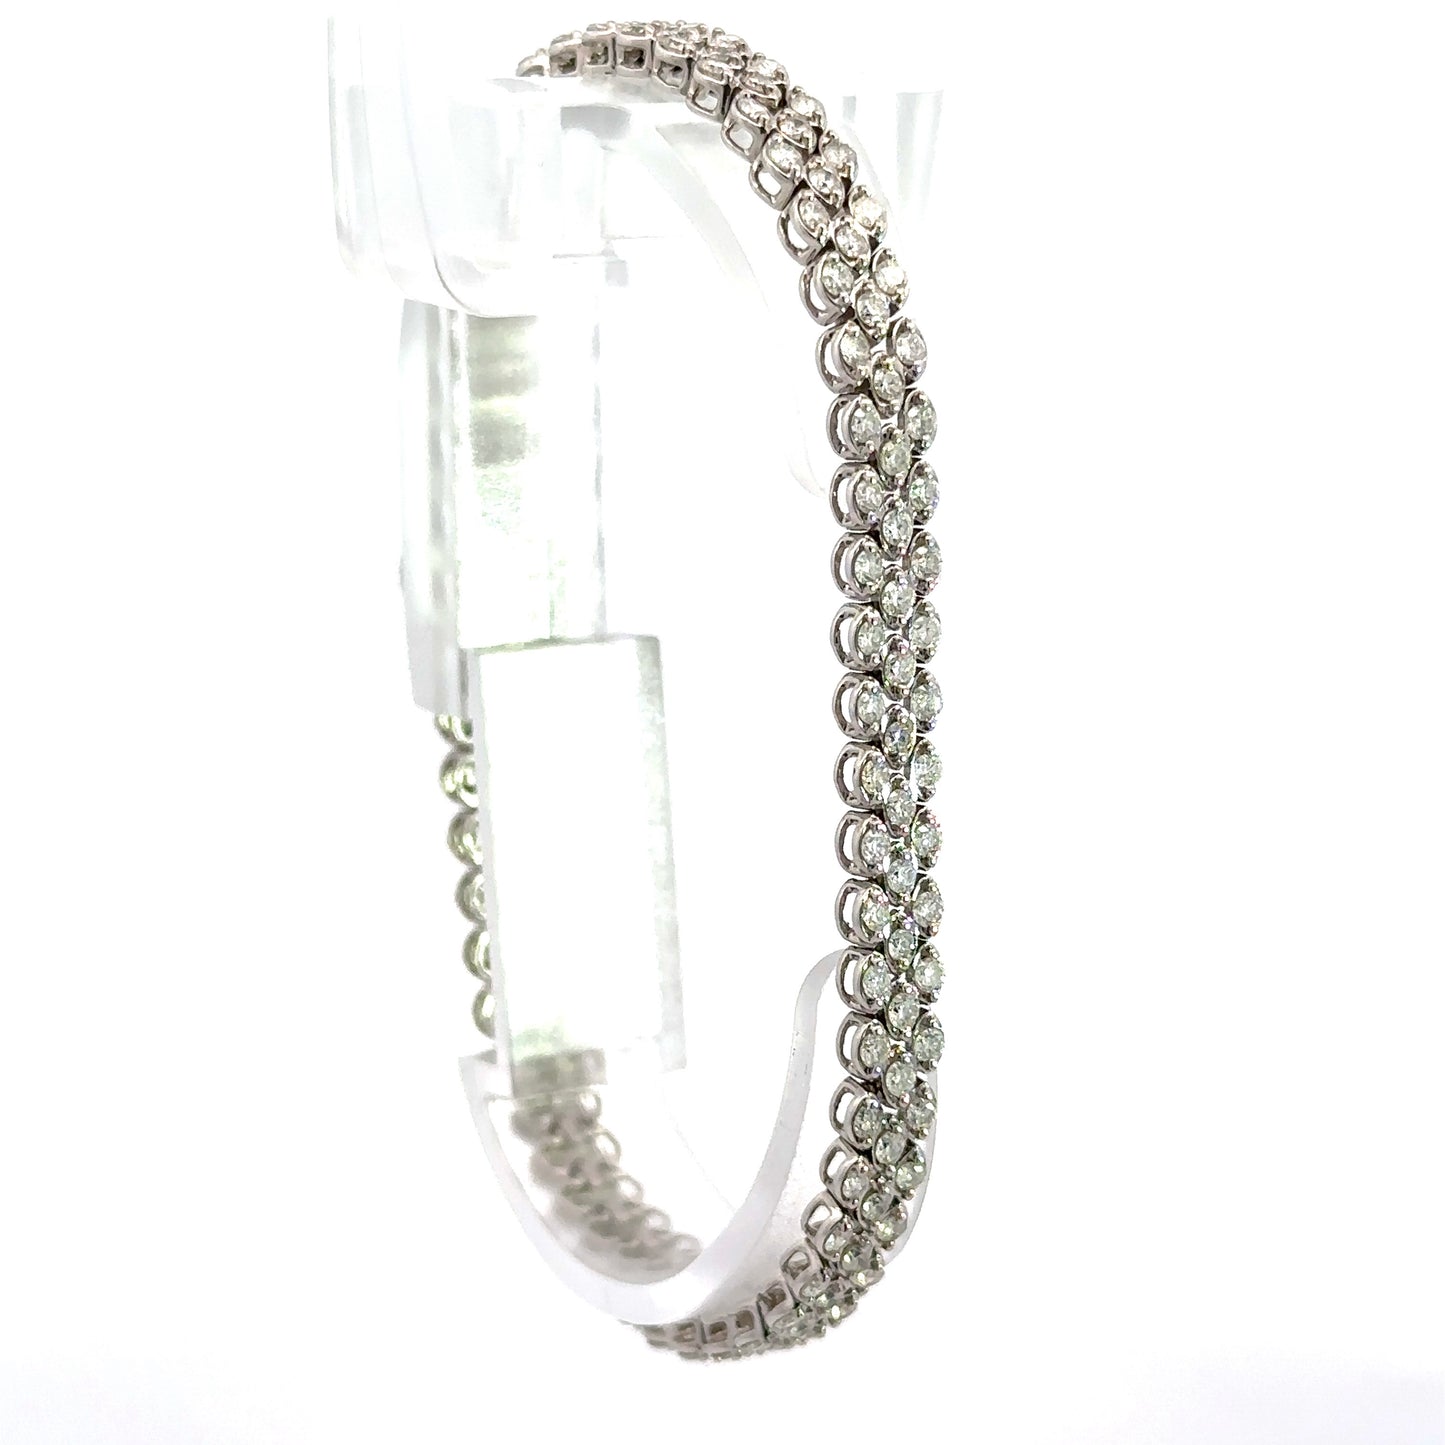 Diagonal view of diamond tennis bracelet in white gold with round diamonds